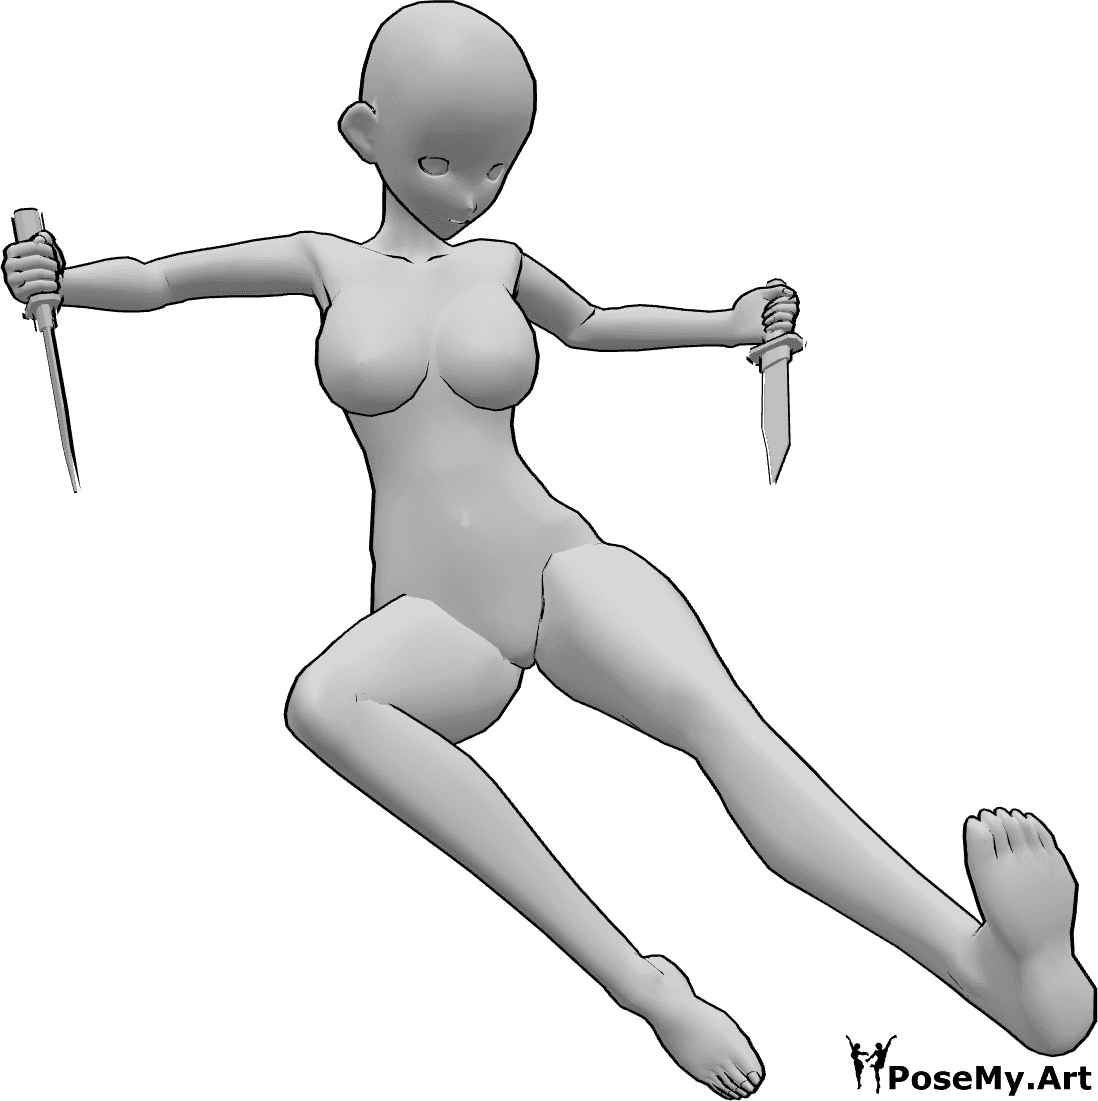 Référence des poses- Anime kick kick knife pose - Une femme animée saute et donne des coups de pied tout en tenant des couteaux dans ses deux mains.